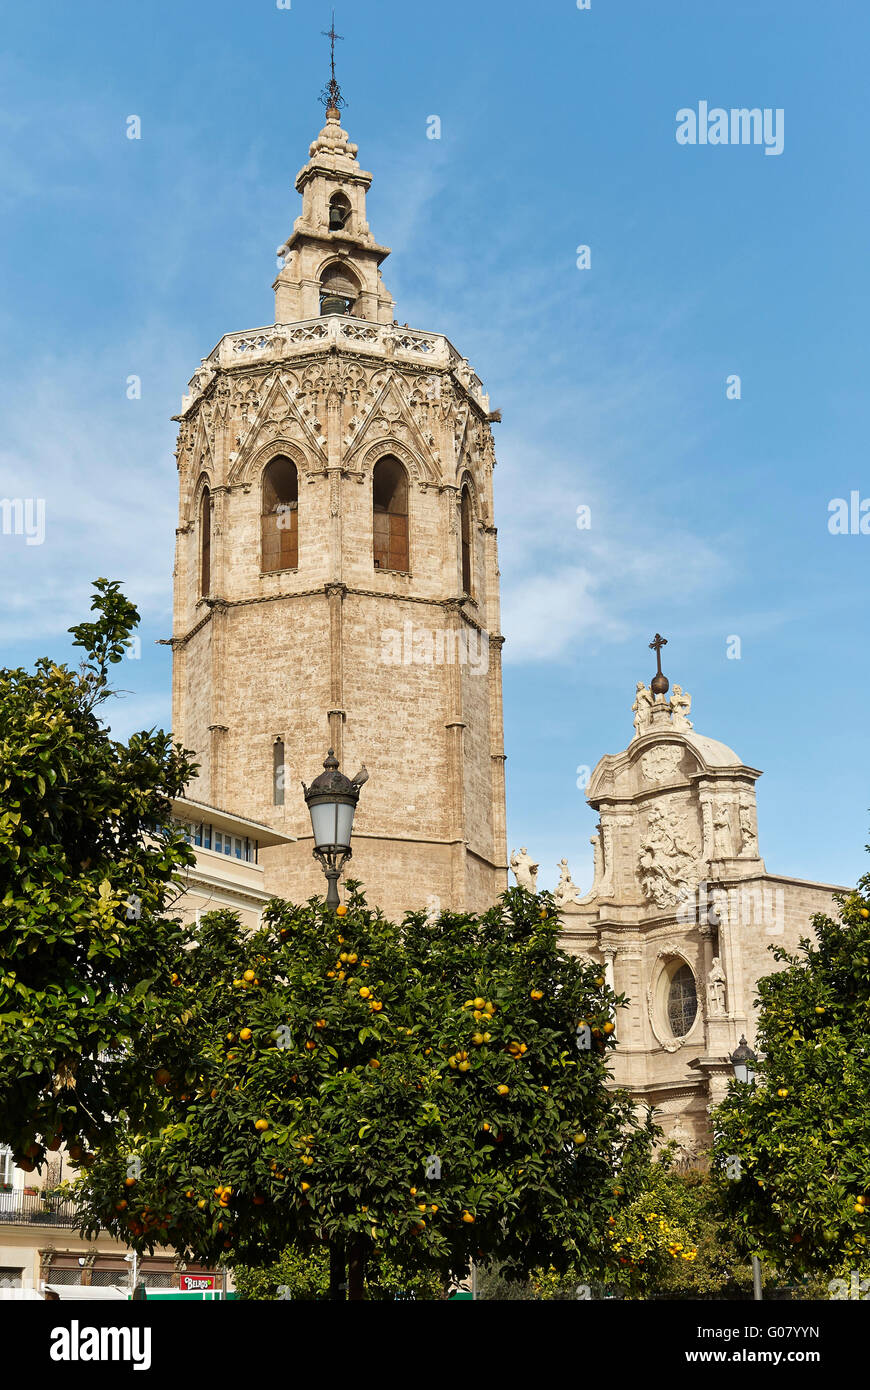 Torre El Micalet. Cattedrale di valencia. Spagna.Gótico valenciano Foto Stock